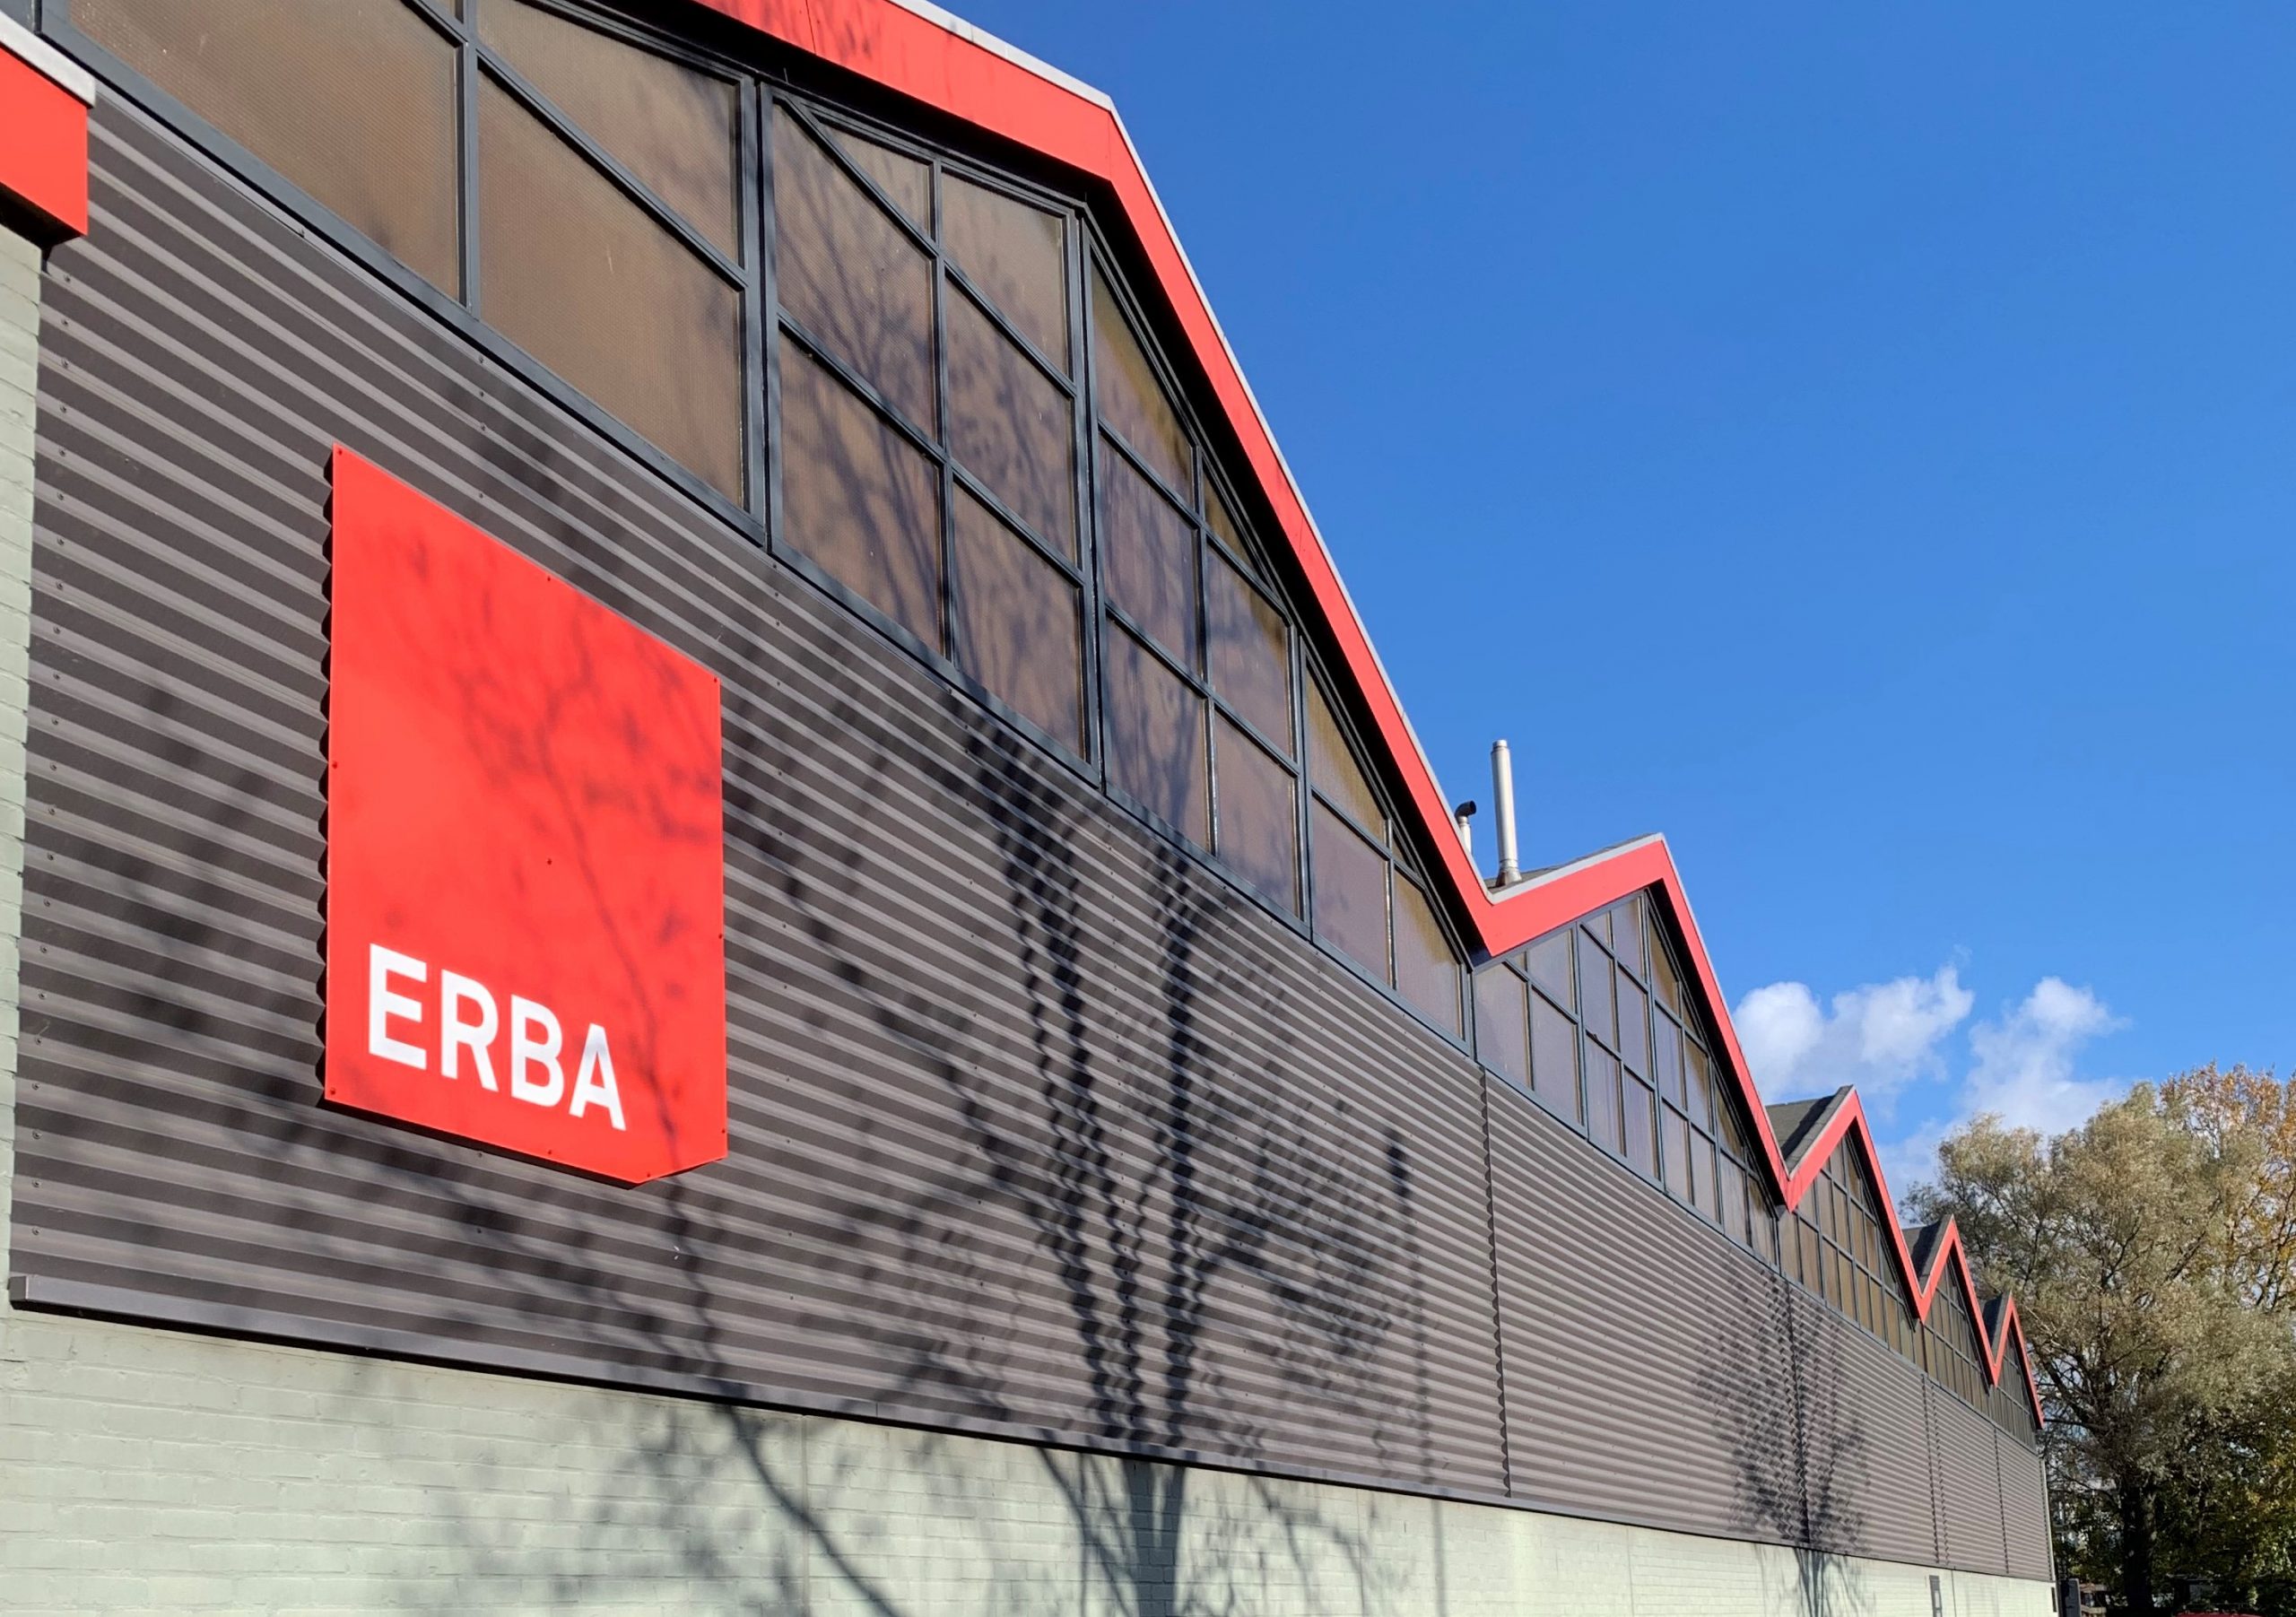 Euro Equipment Nederland in Rotterdam is al sinds 2013 onderdeel van ERBA Plaatbewerking en gaat nu verder onder de handelsnaam ERBA.